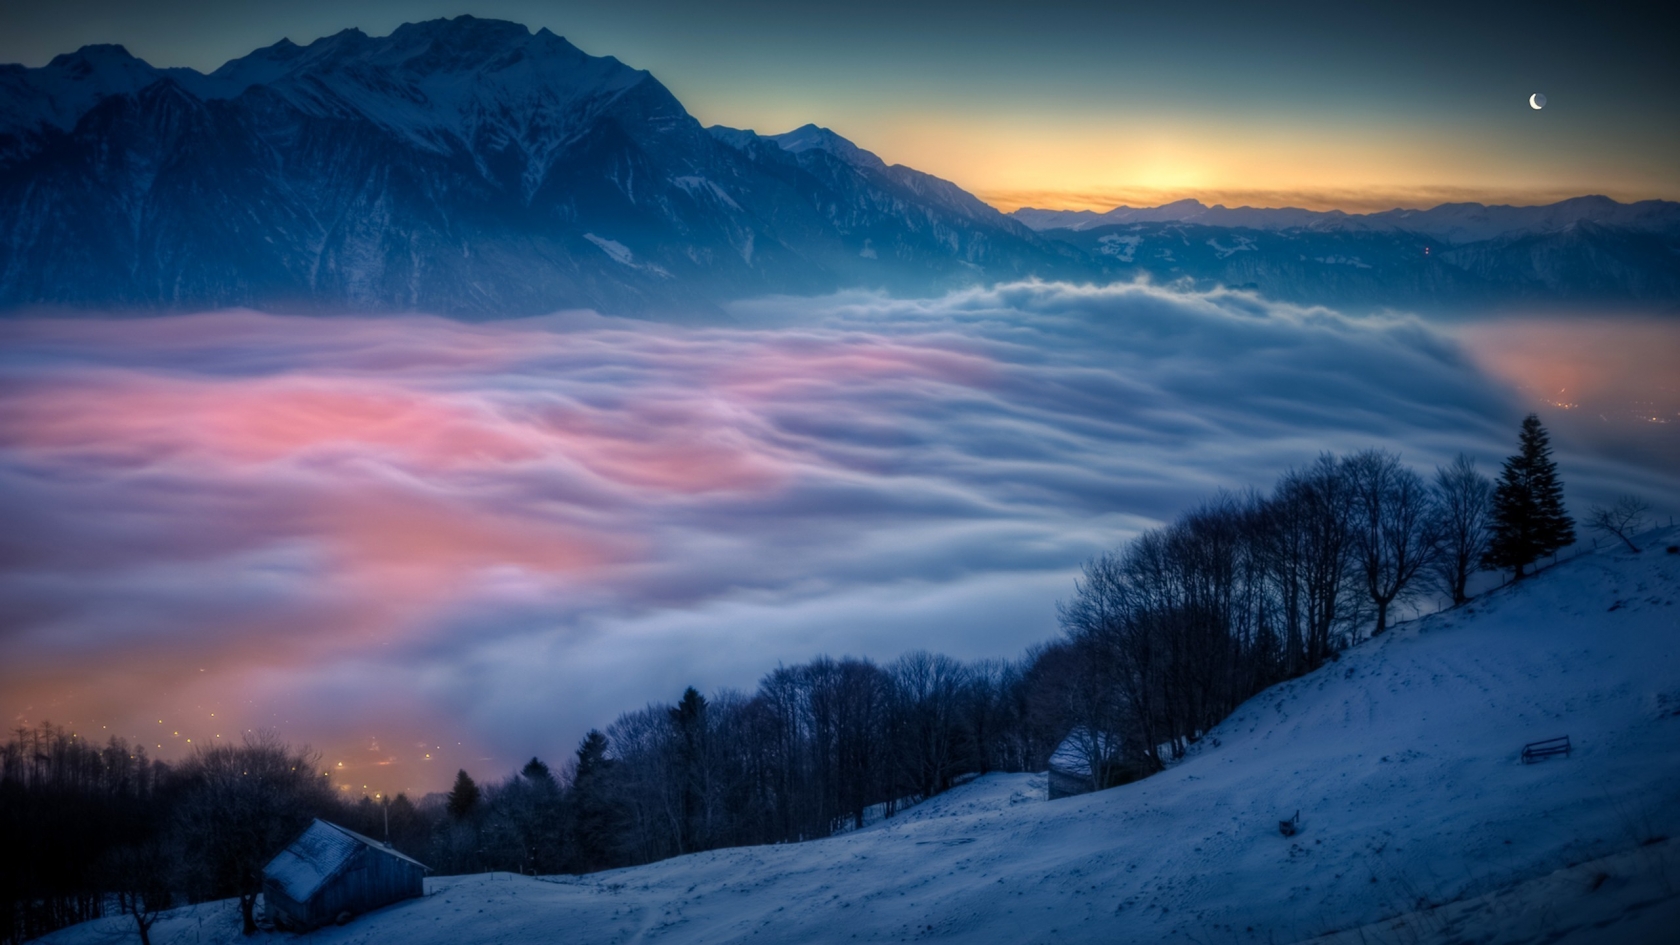 Mountain Fog for 1680 x 945 HDTV resolution